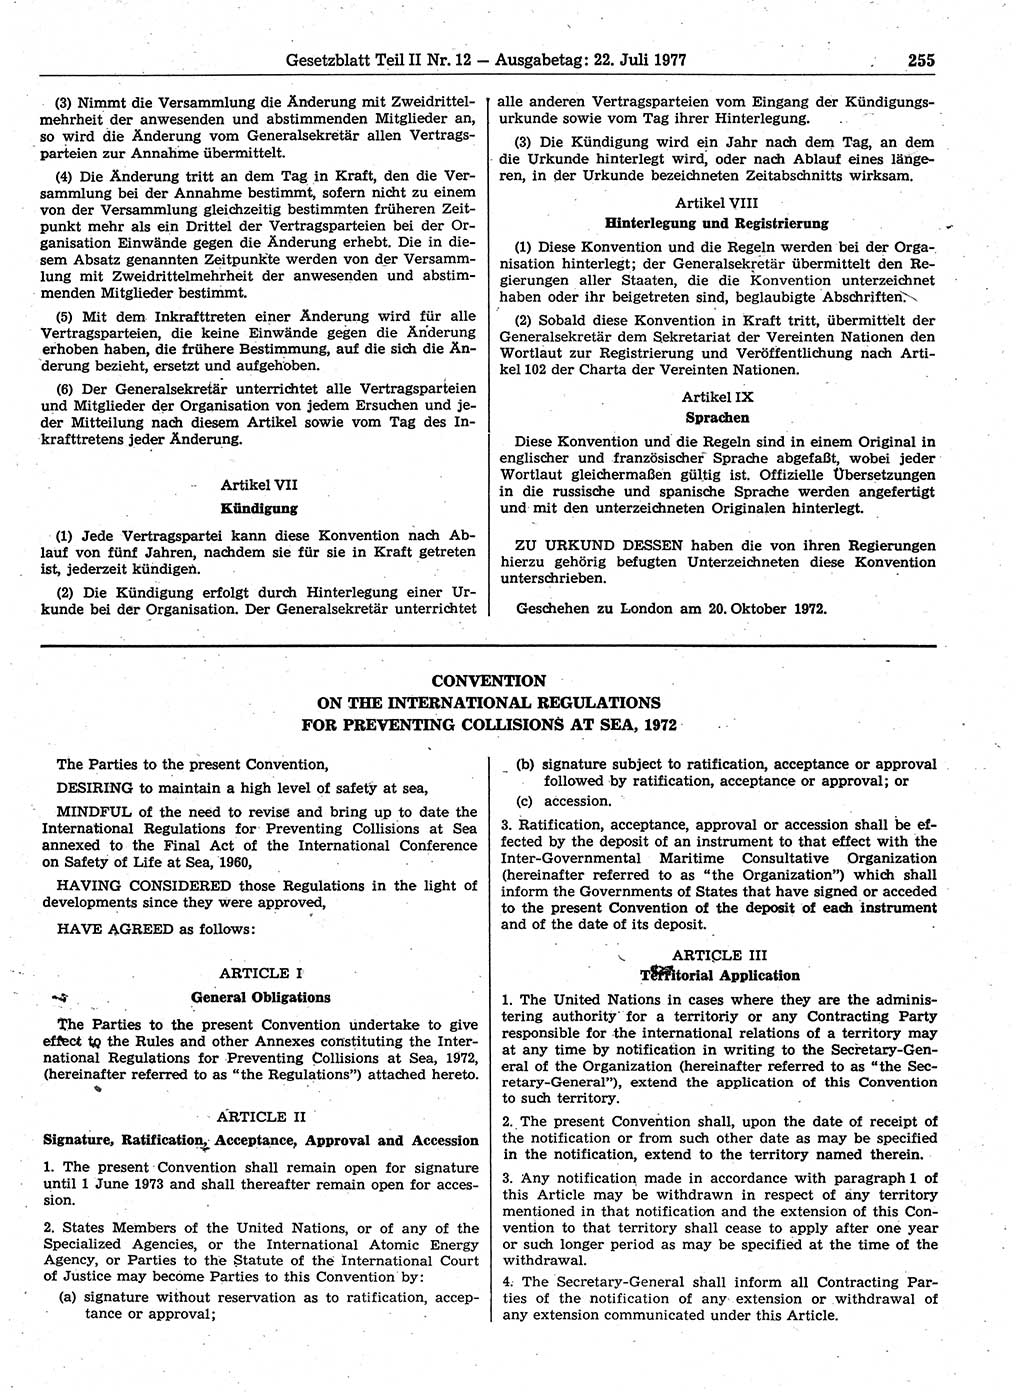 Gesetzblatt (GBl.) der Deutschen Demokratischen Republik (DDR) Teil ⅠⅠ 1977, Seite 255 (GBl. DDR ⅠⅠ 1977, S. 255)